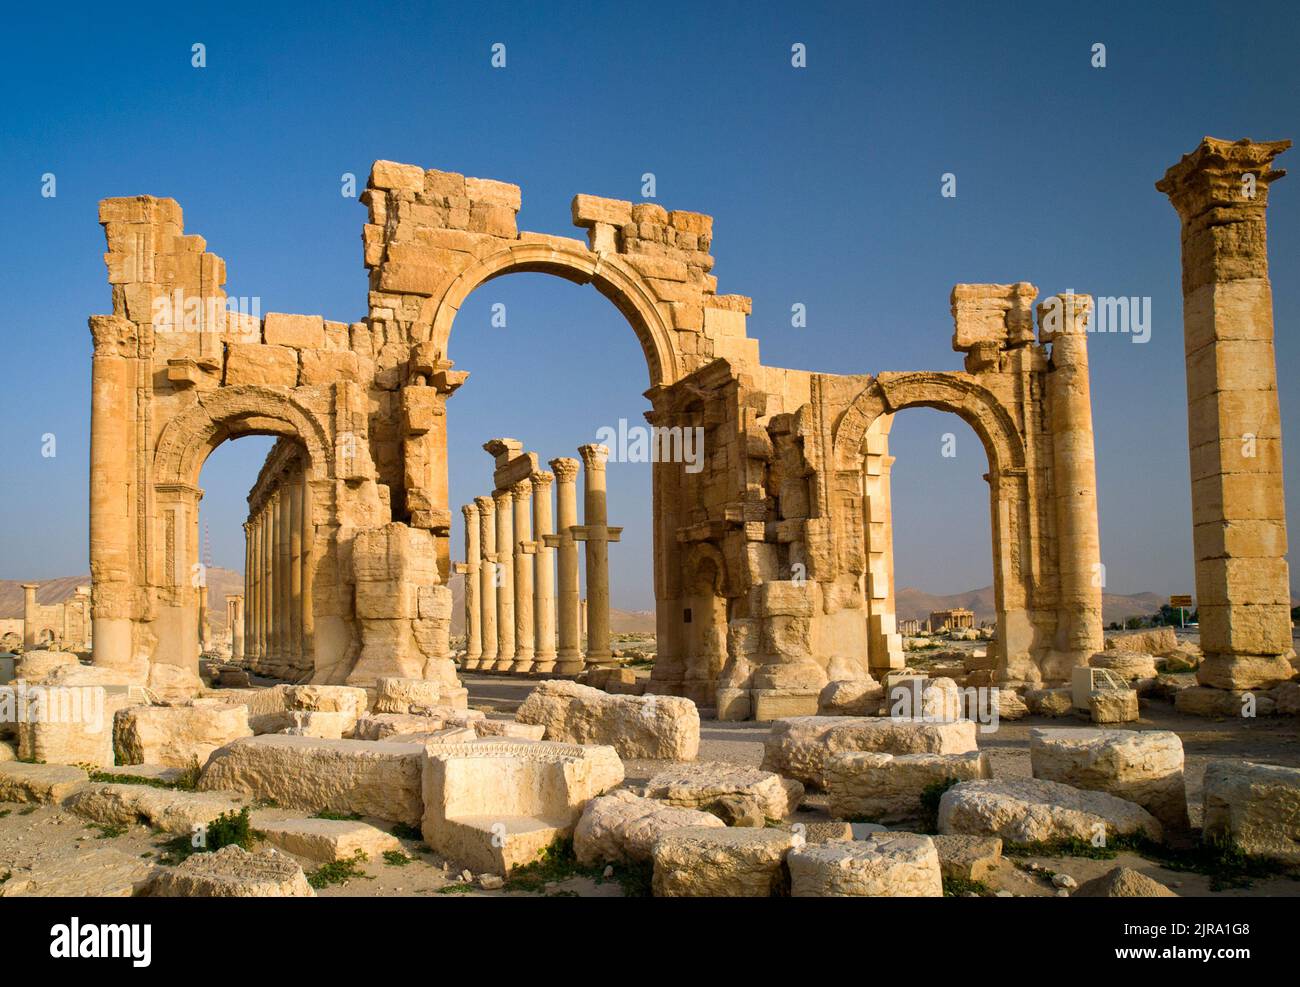 L'arche monumentale dans la partie orientale de la colonnade, Palmyra, gouvernorat de Homs, Syrie Banque D'Images